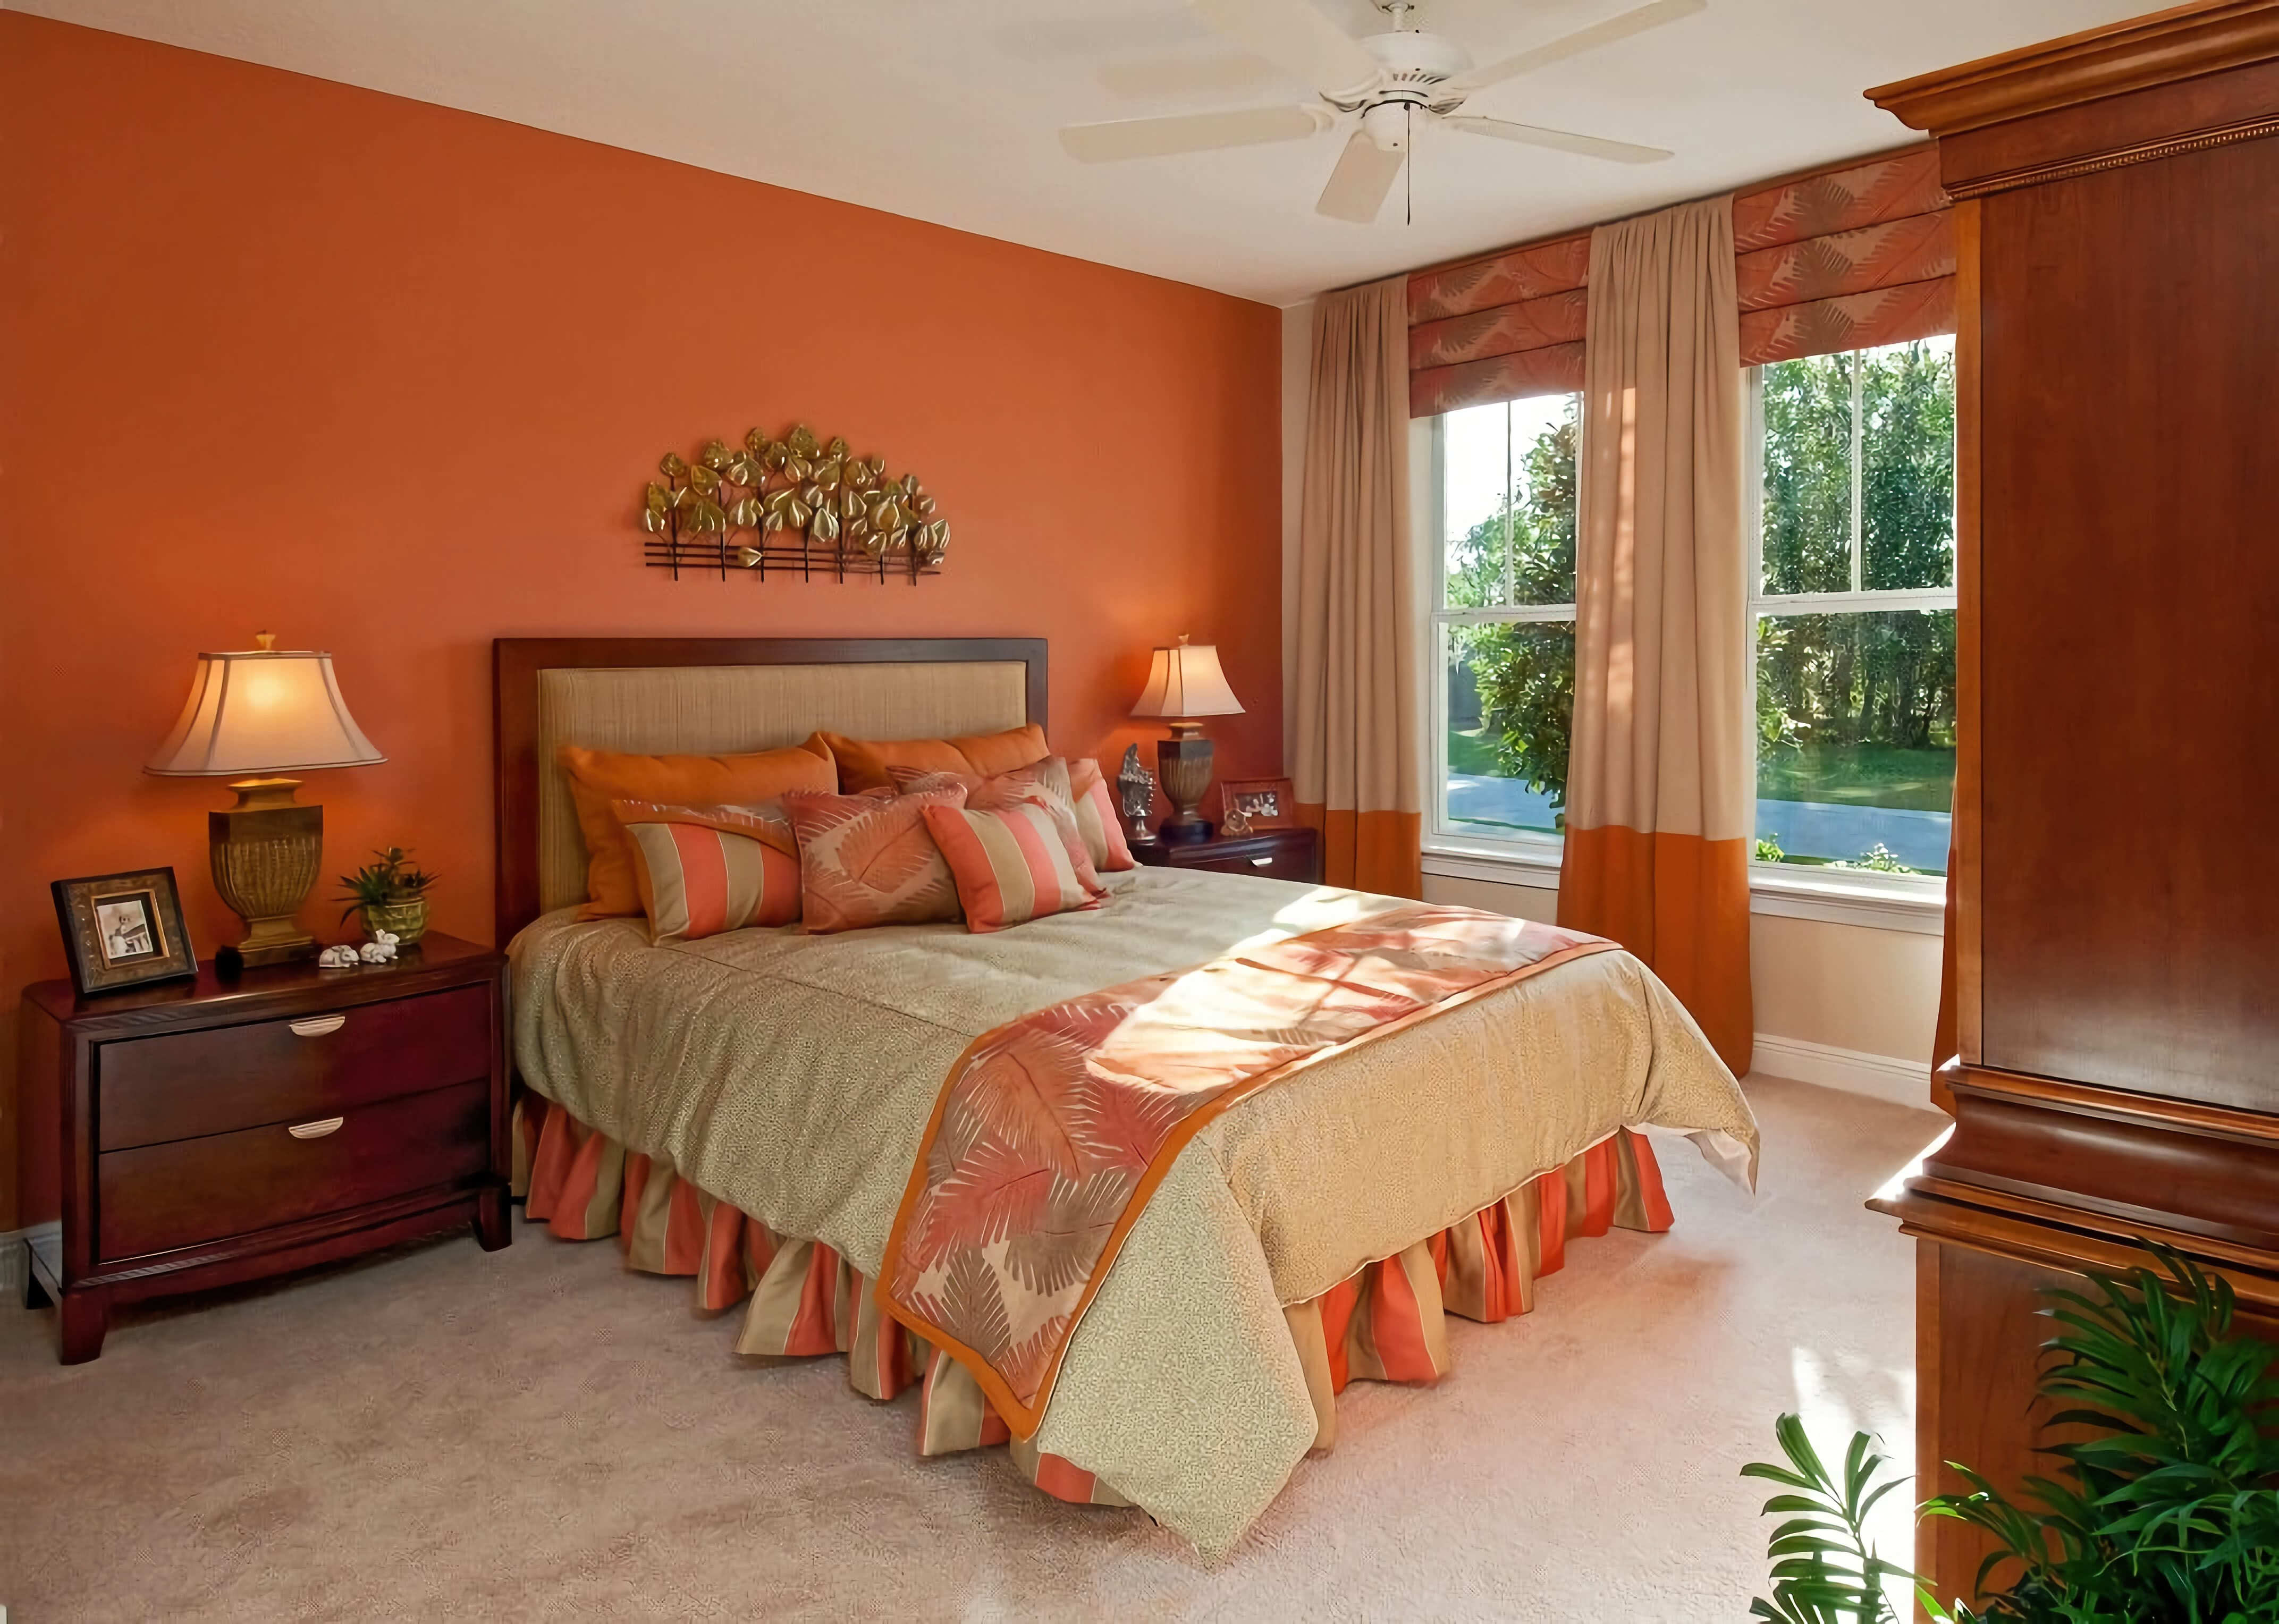 Спальня. Оранжевые стены, мебель, низ штор